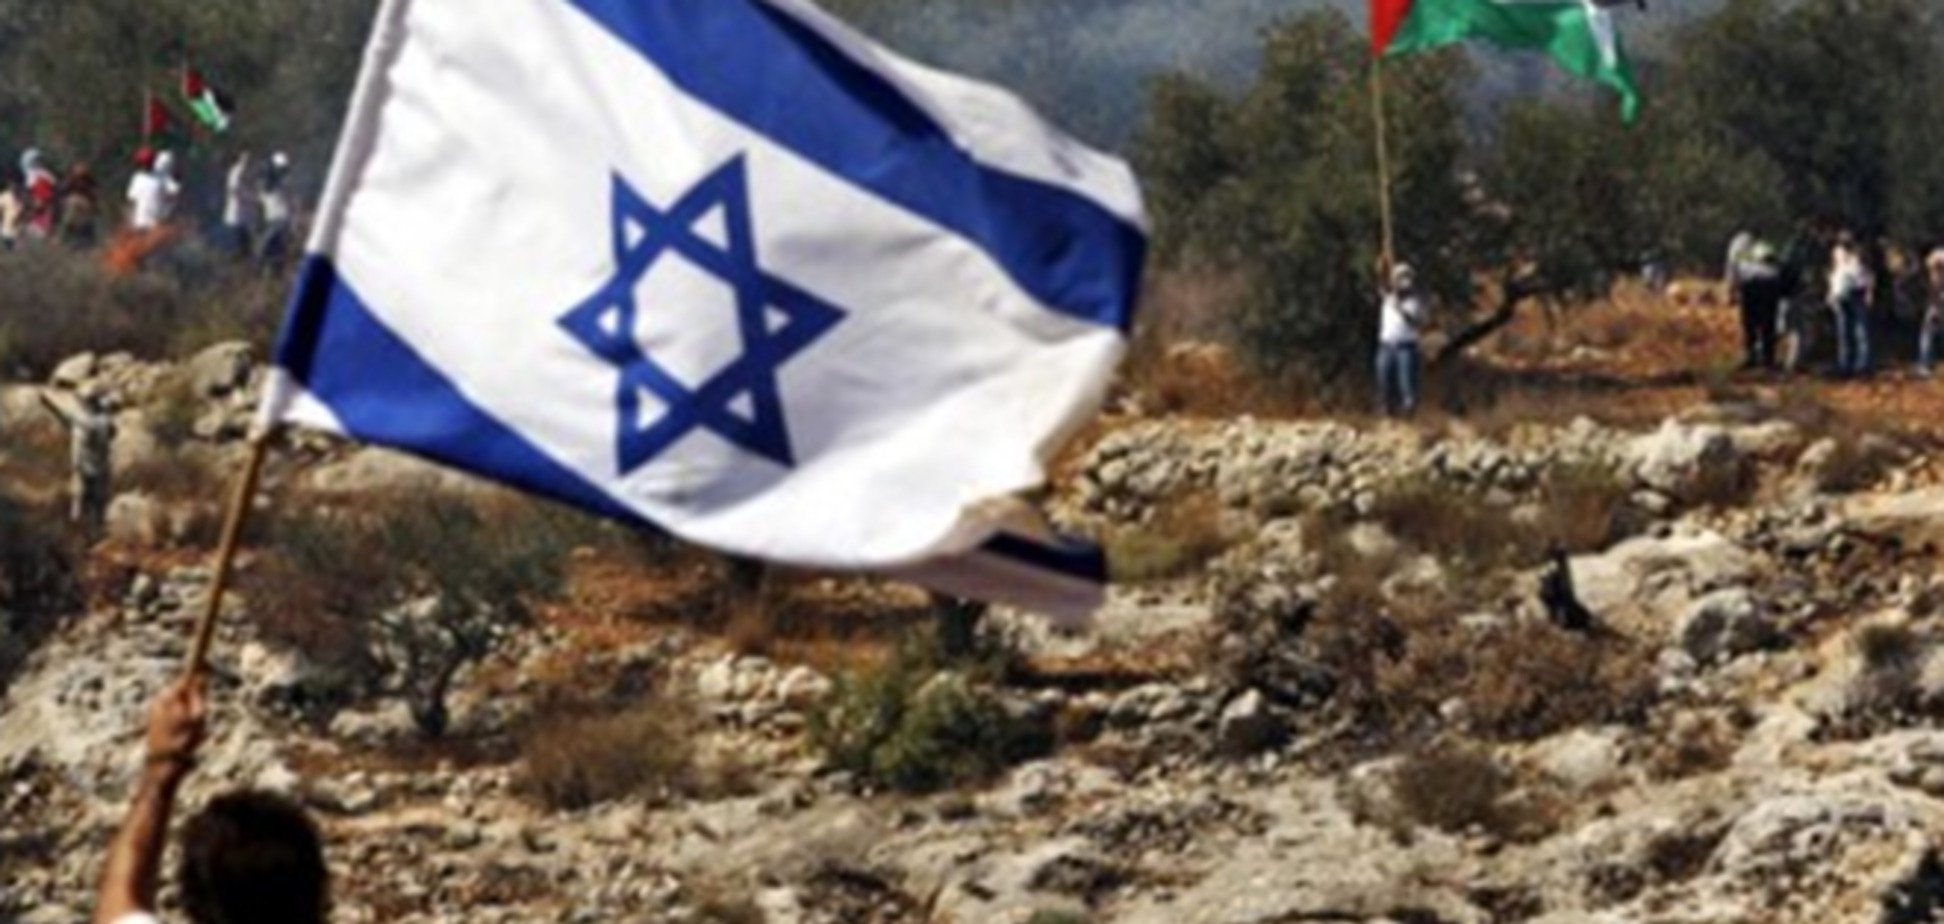 Ізраїль обговорить мир з Палестиною на референдумі